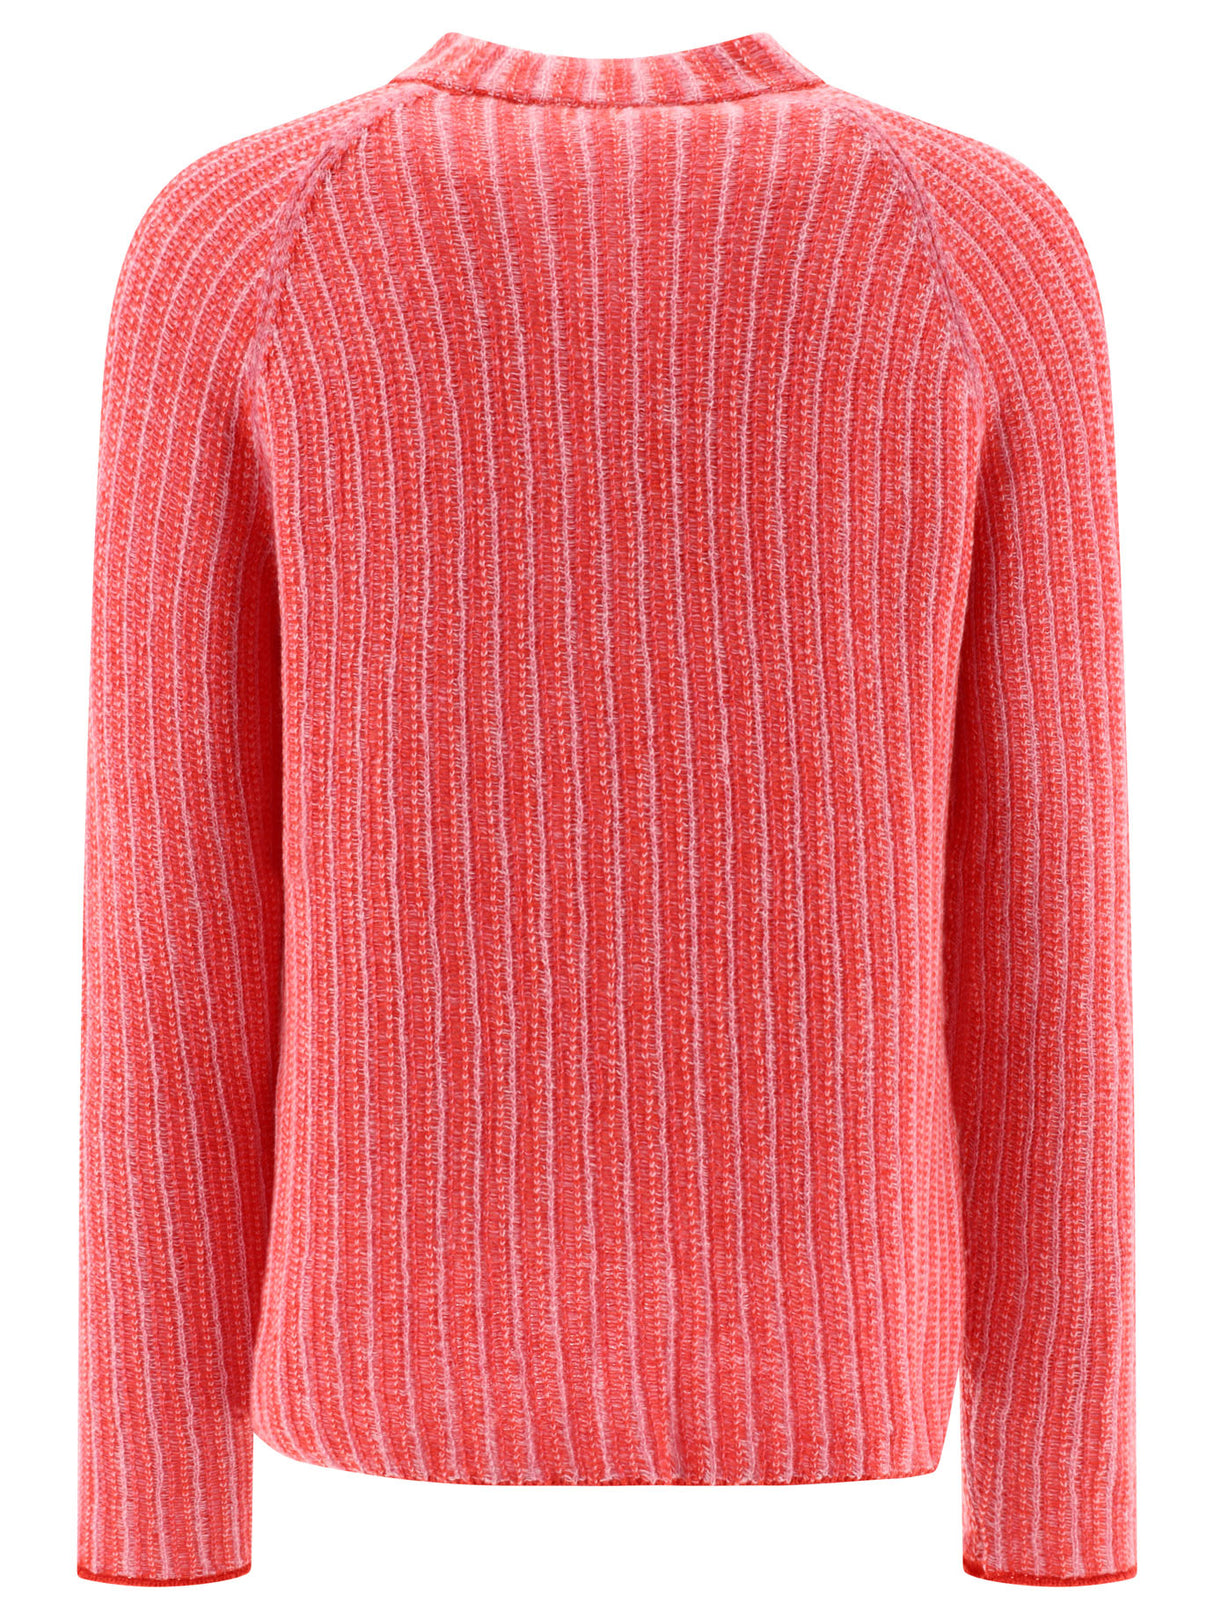 メンズ用赤色グラデーションストライプセーター - FW24コレクション